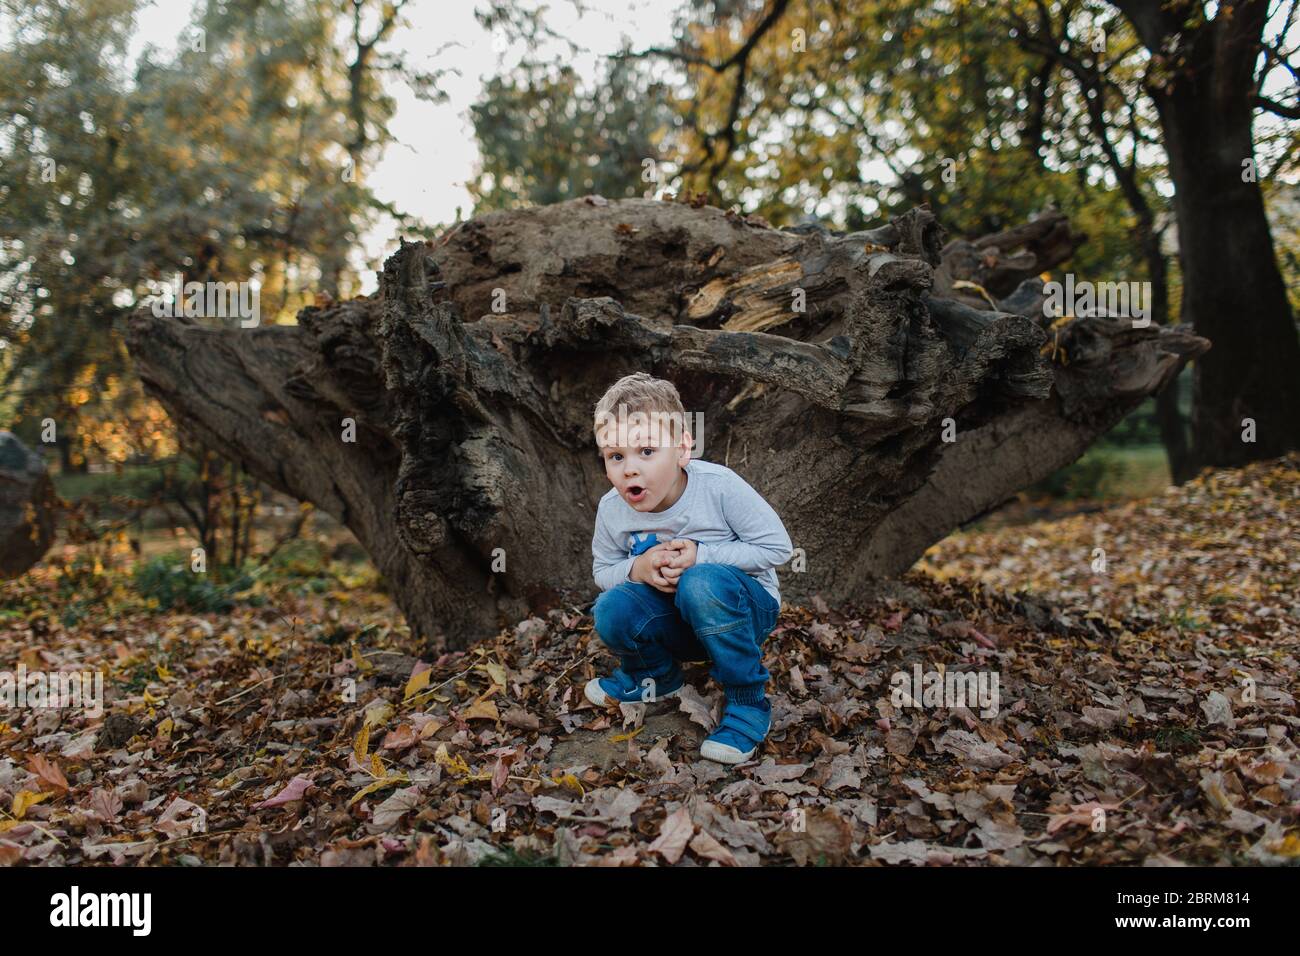 Kleiner Junge hockend durch Baumstumpf. Niedliches Kind hockend auf dem Boden in den Wäldern mit Herbstblättern und versteckt. Stockfoto